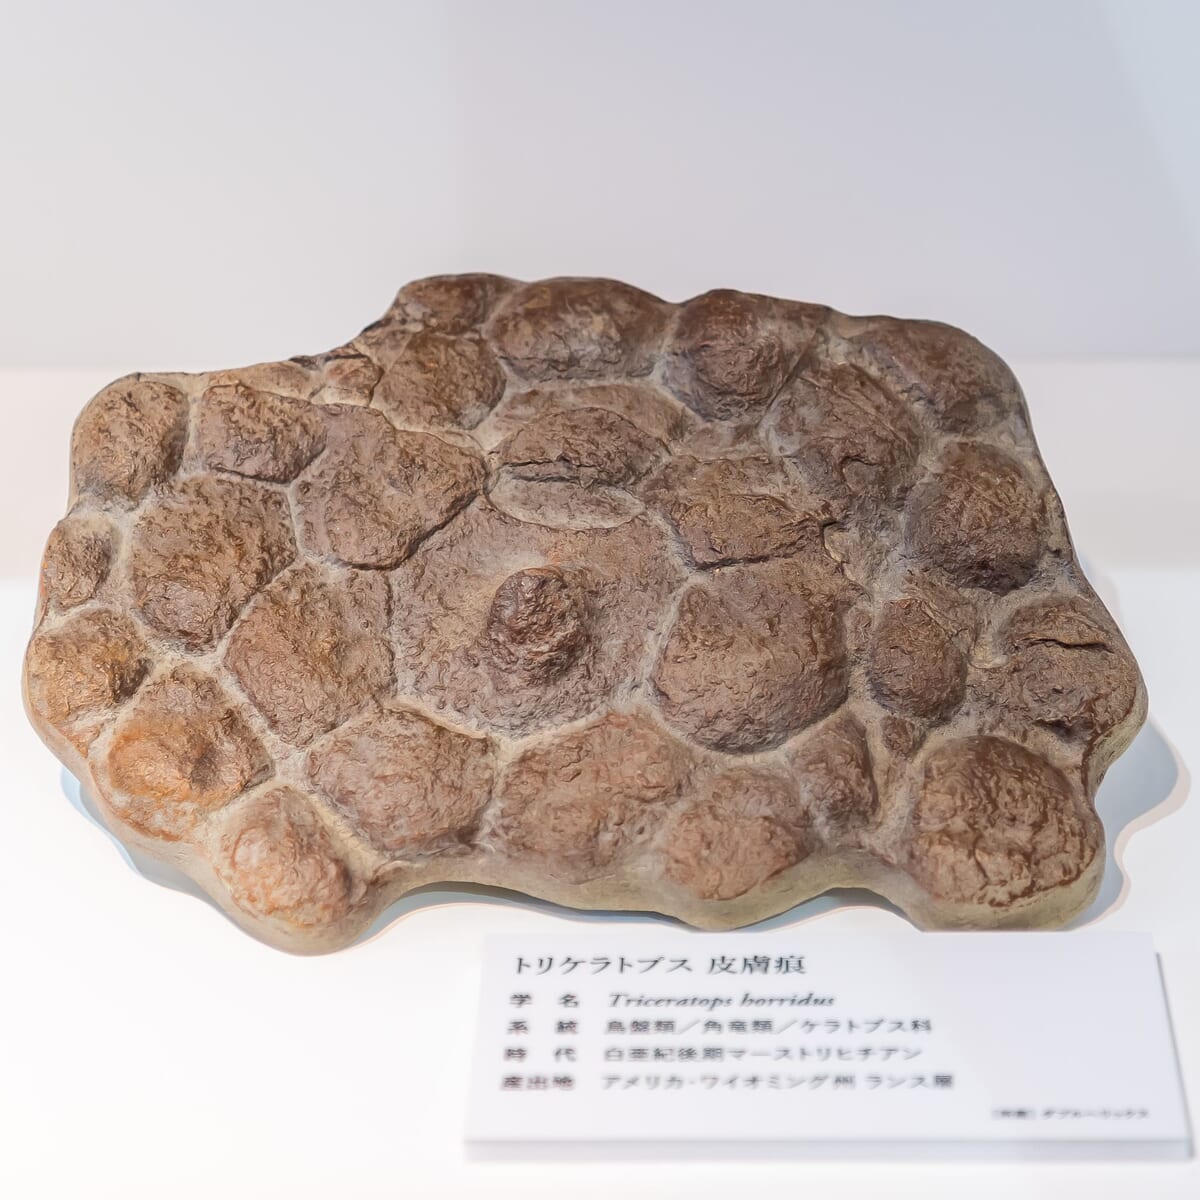 トリケラトプス 皮膚化石